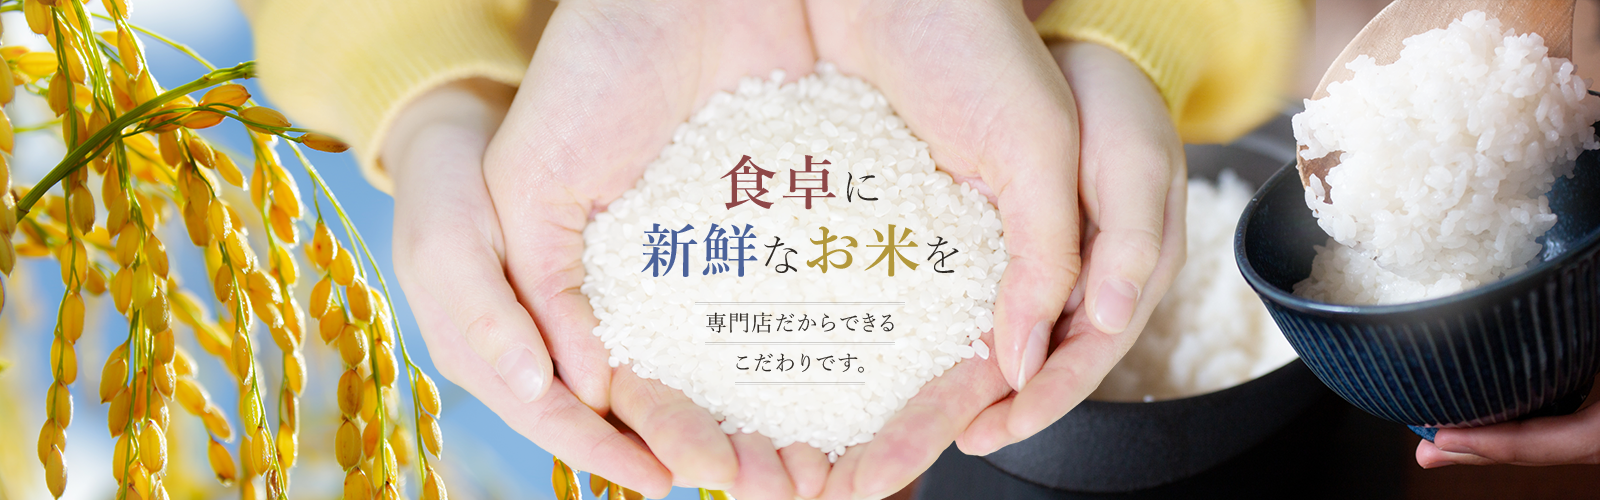 食卓に新鮮なお米を 専門店だからできるこだわりです。